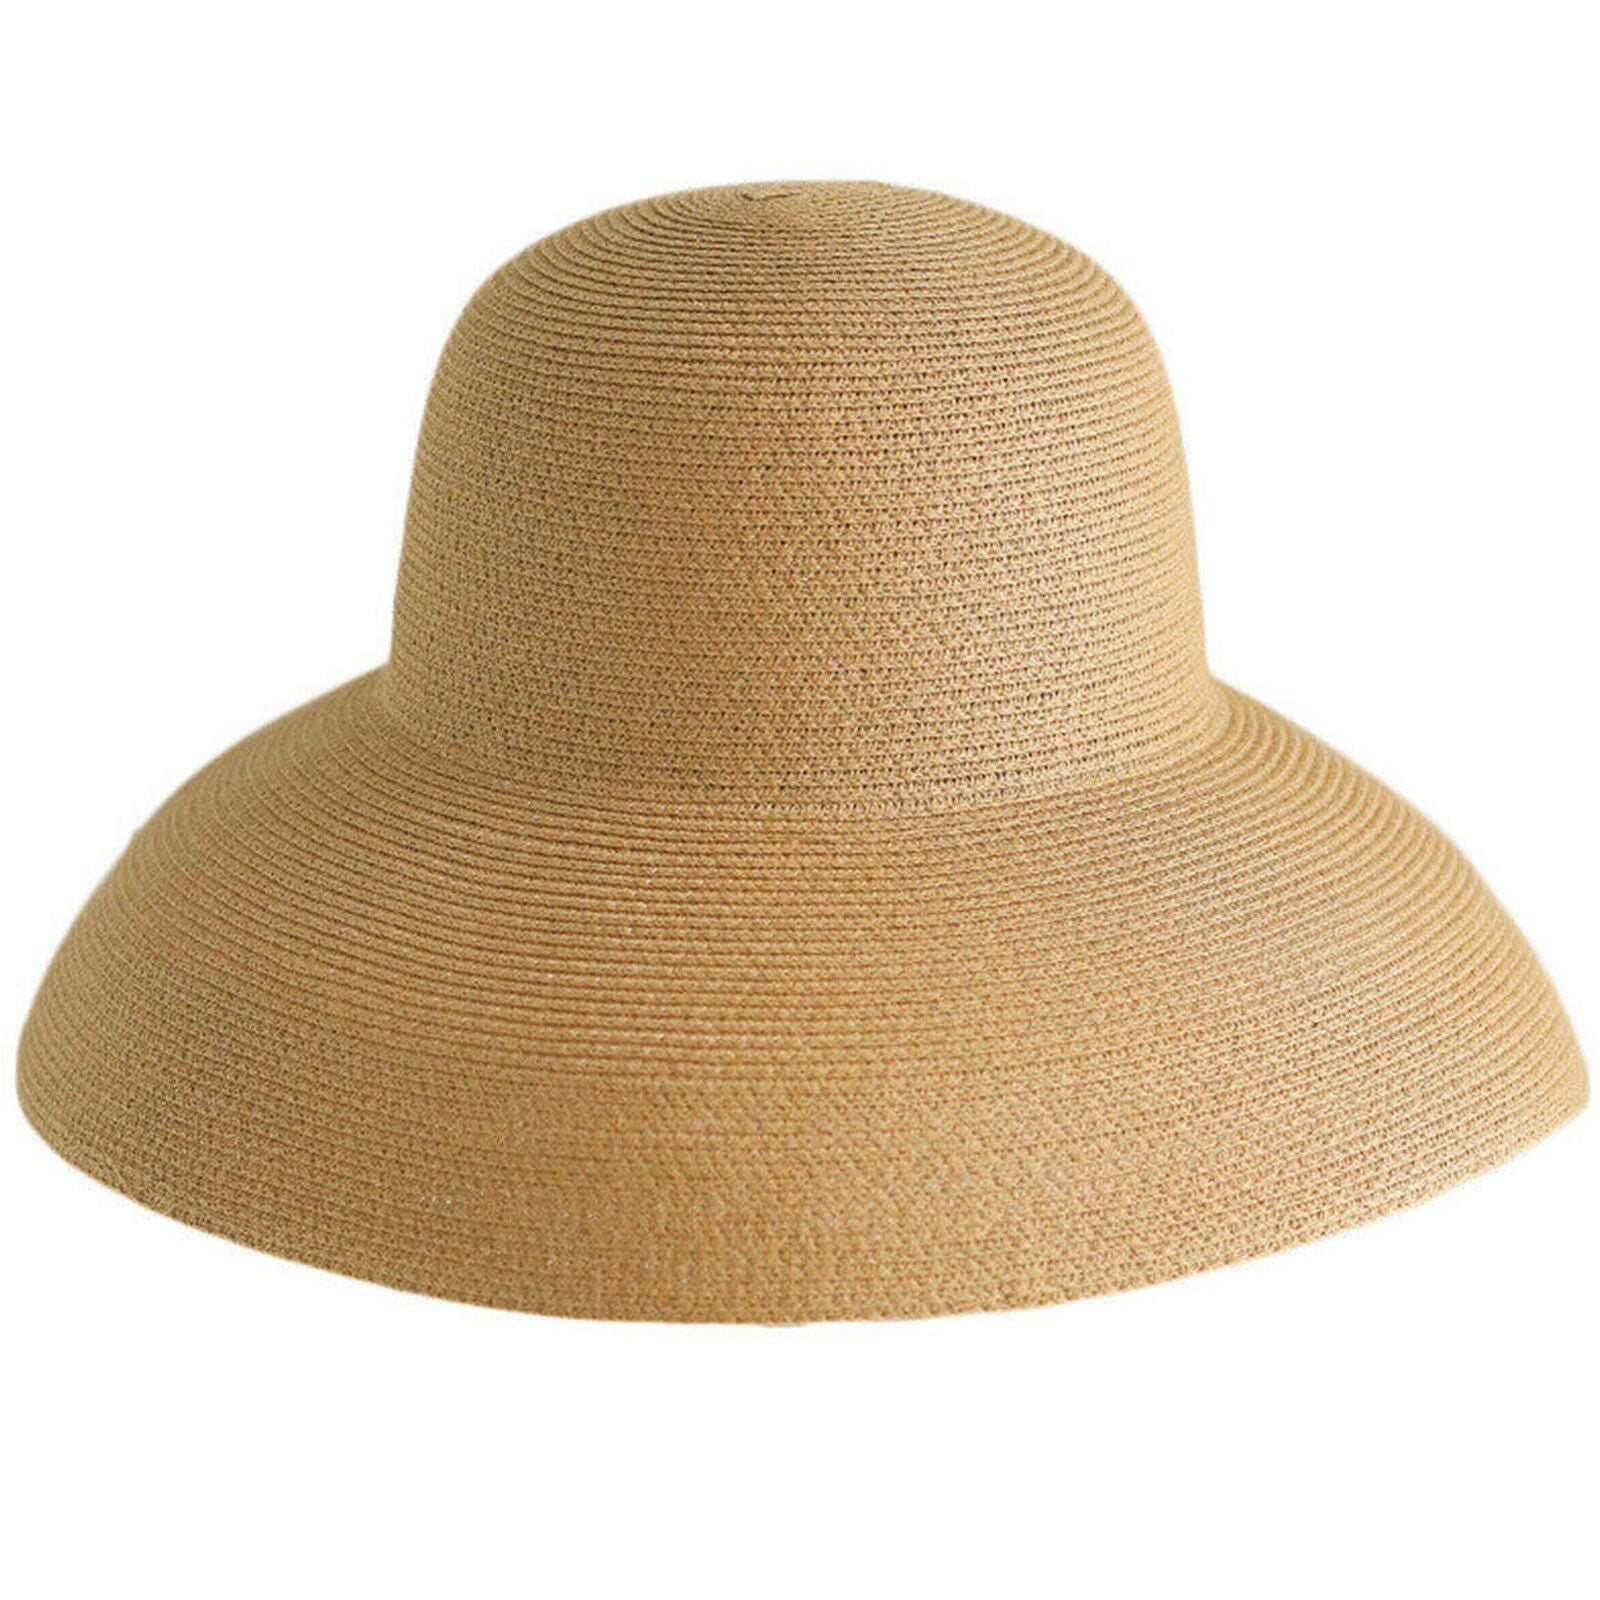 Handmade Women Ladies Summer Straw Hat Hepburn Style Wide Brim Beach Sun Hats